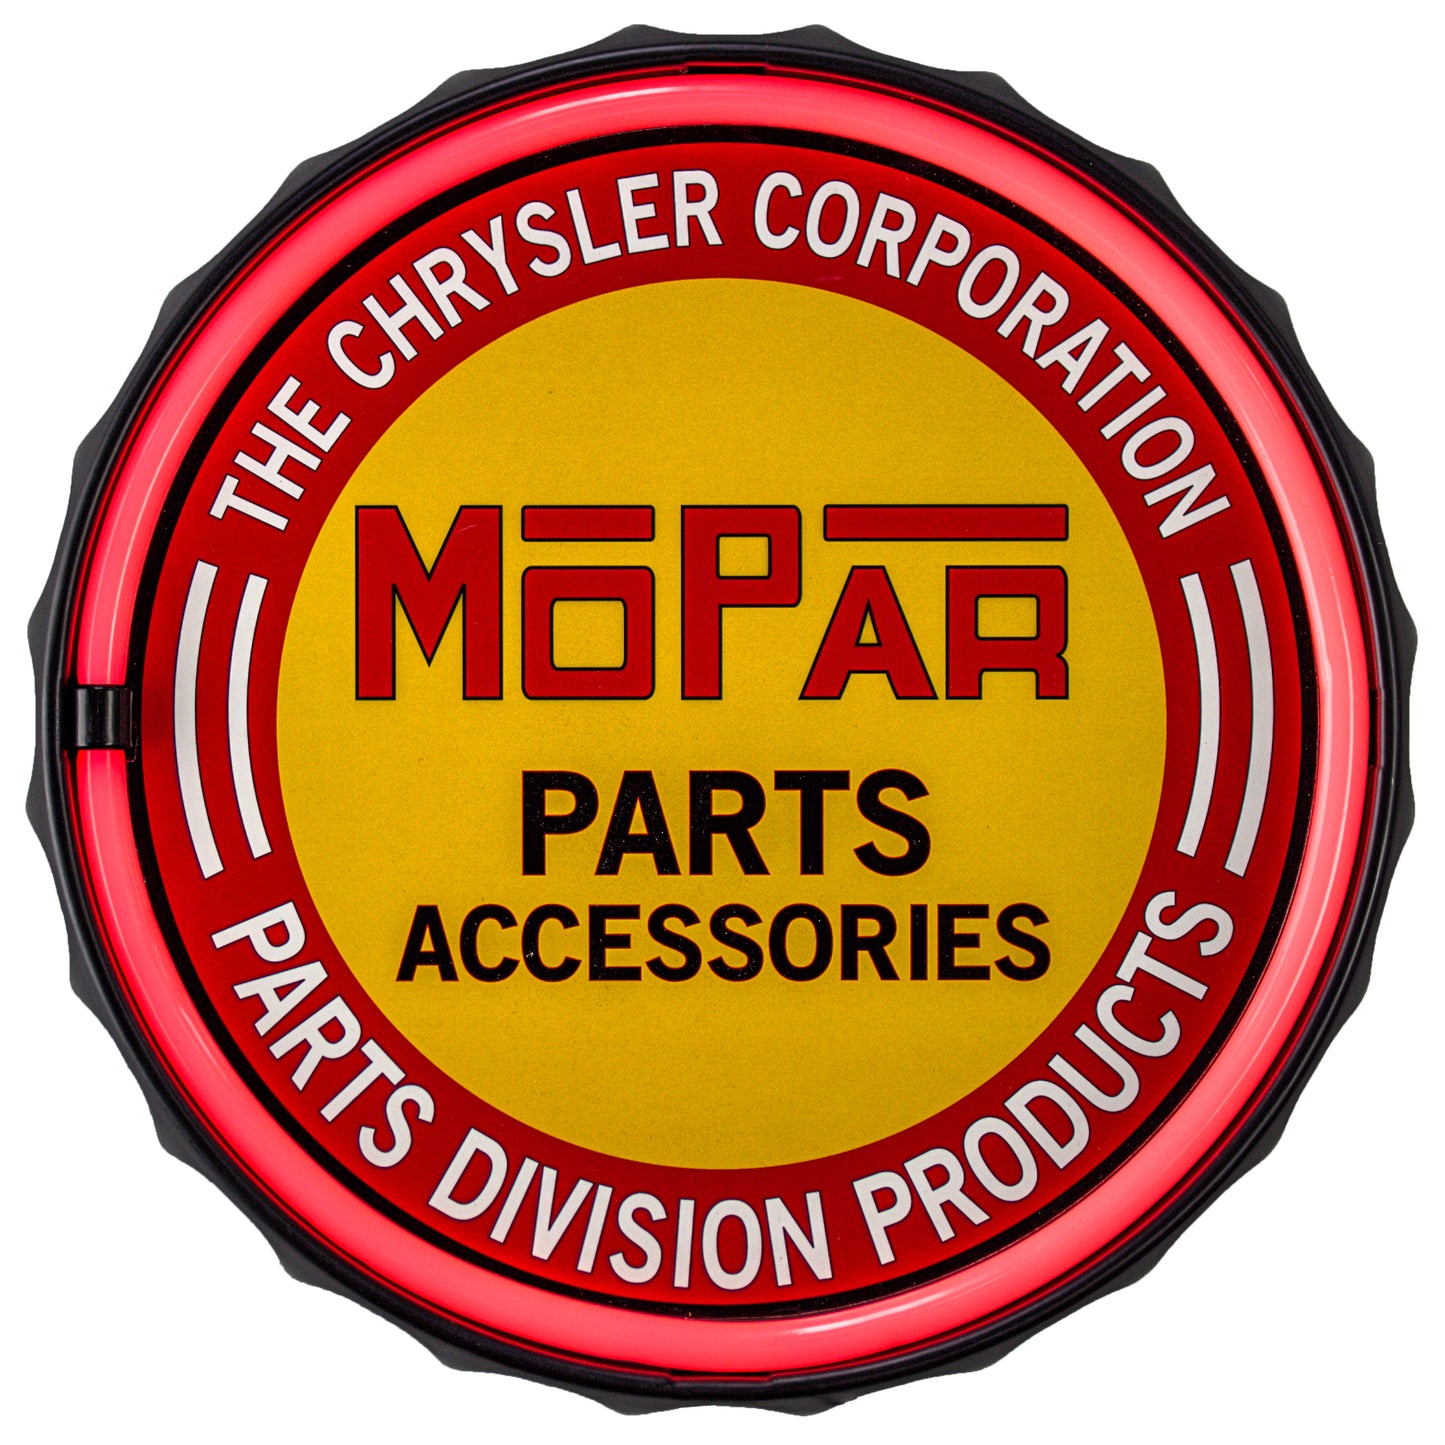 Mopar Chrysler Parts Accessories LED Neon Light Sign (12.5”)